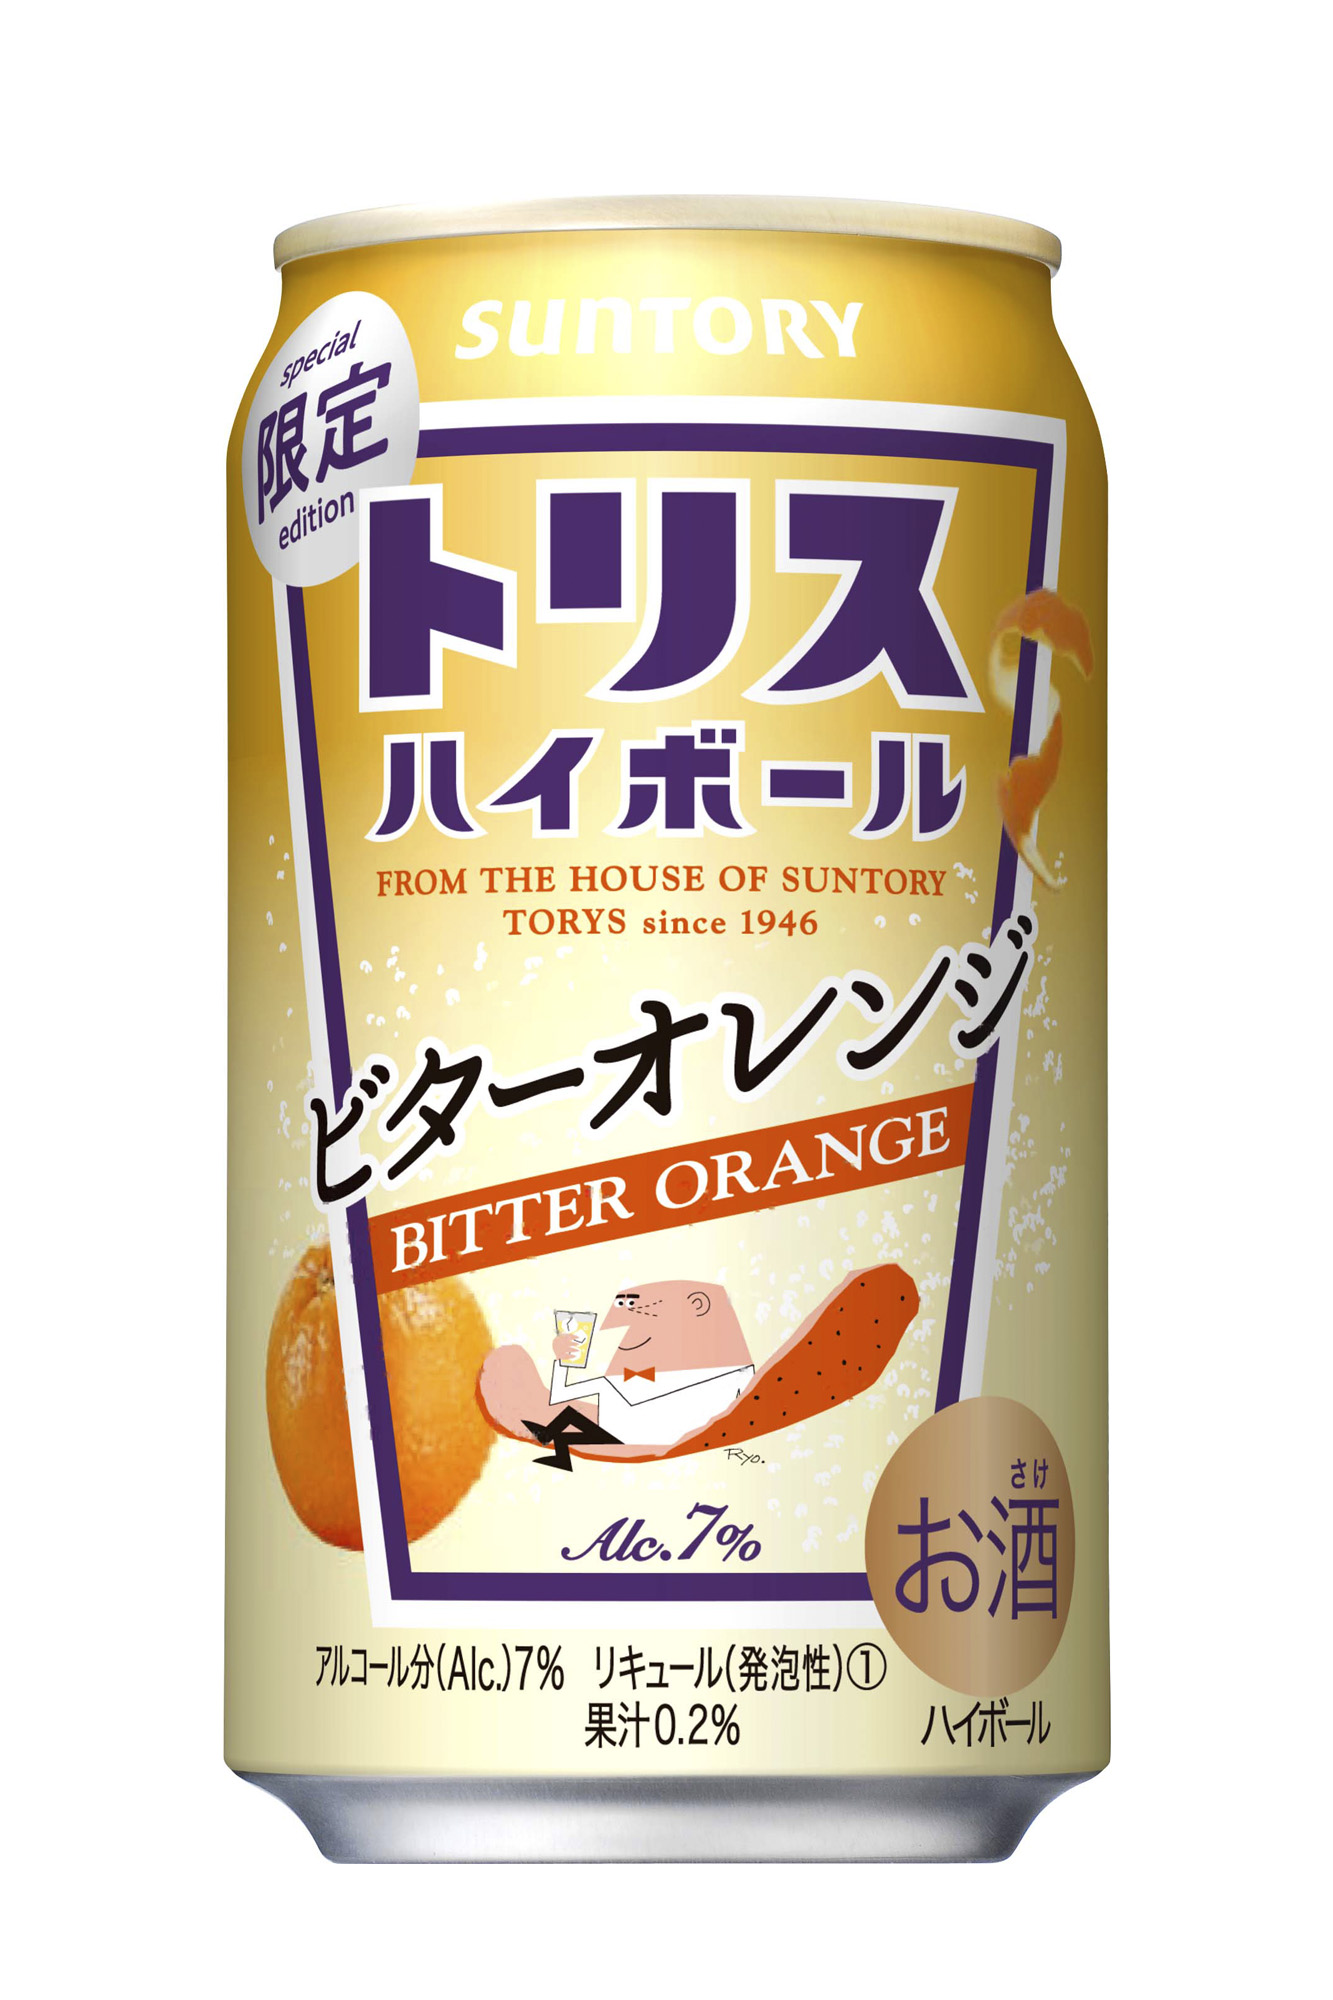 トリスハイボール缶 ビターオレンジ 期間限定新発売 年9月29日 ニュースリリース サントリー